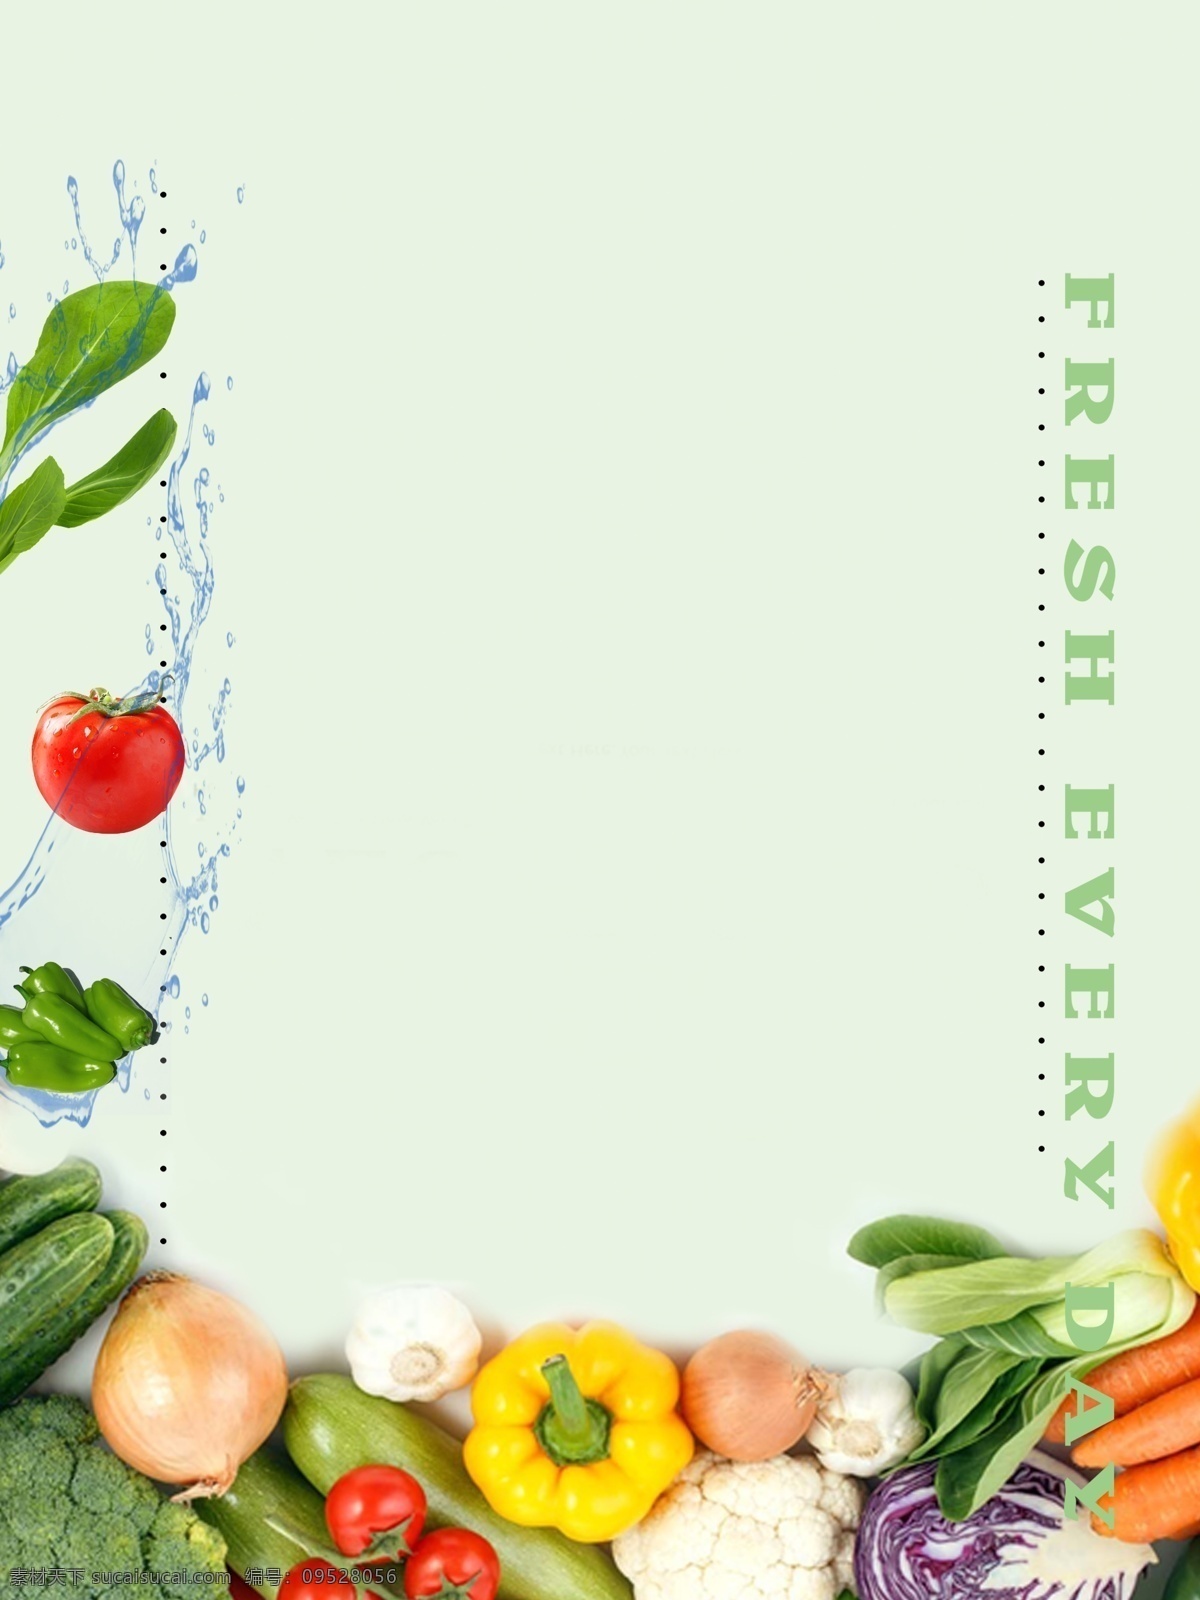 蔬菜背景 蔬菜 背景 青菜 西红柿 黄瓜 番茄 绿叶菜 包菜 洋葱 食材 食物 绿色蔬菜 食物背景